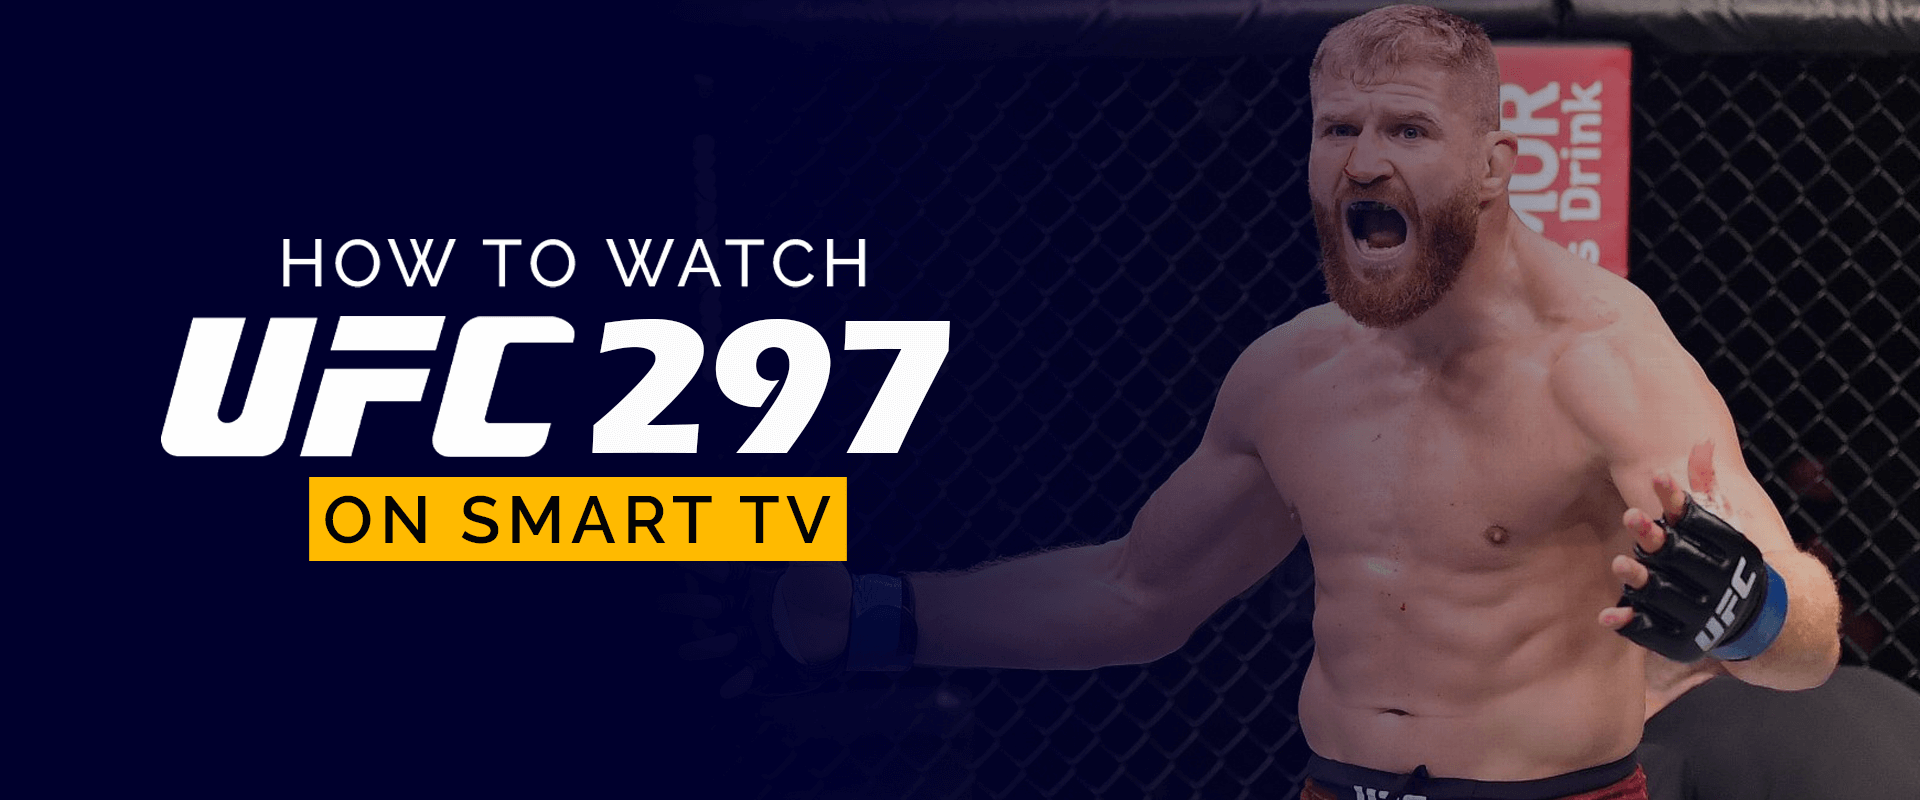 Como Assistir UFC 297 na Smart TV